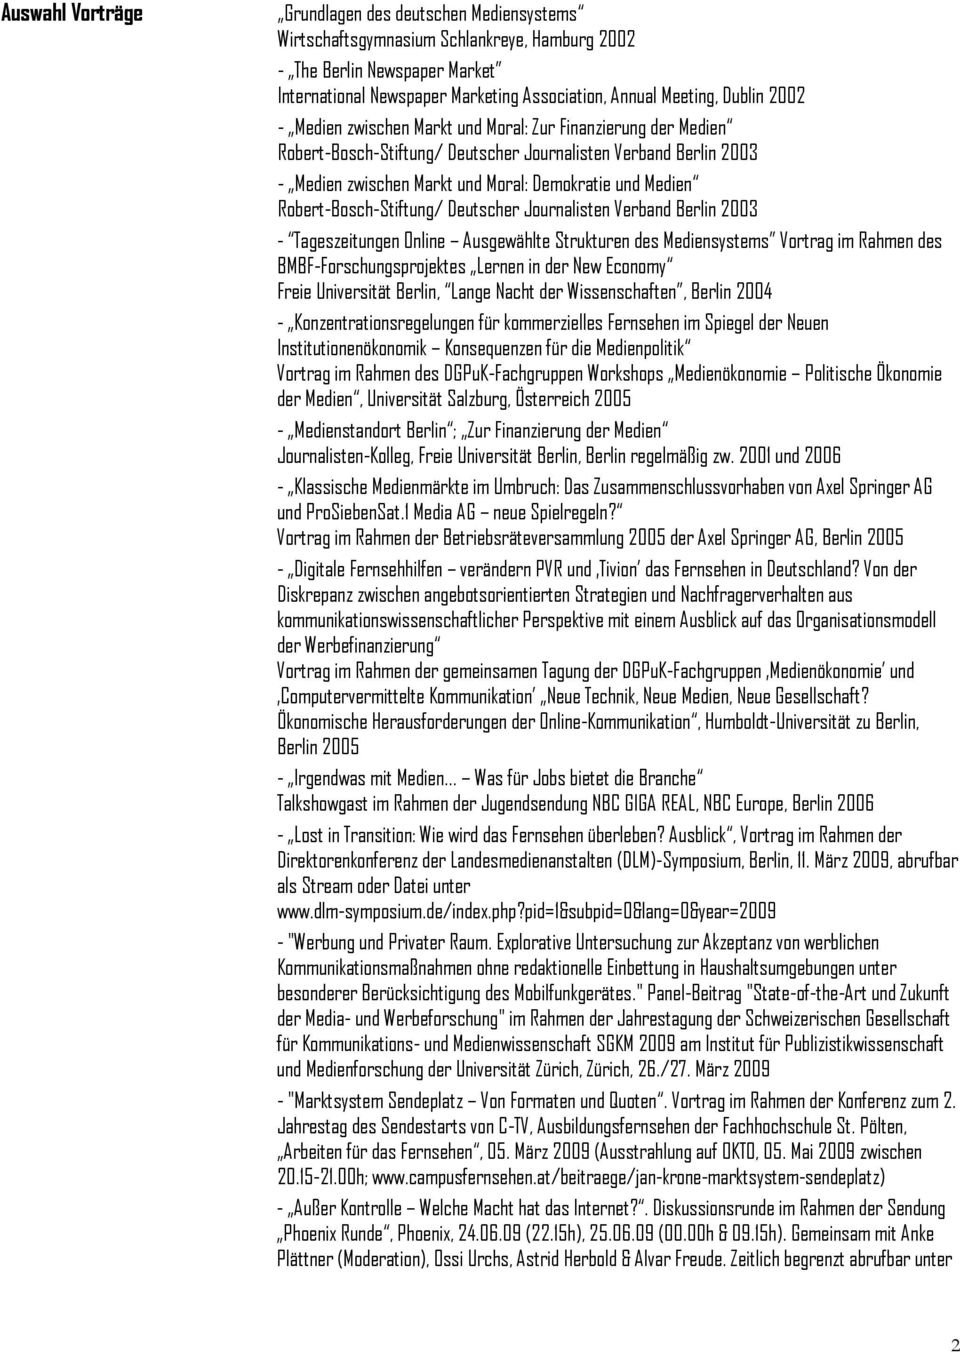 Robert-Bosch-Stiftung/ Deutscher Journalisten Verband Berlin 2003 - Tageszeitungen Online Ausgewählte Strukturen des Mediensystems Vortrag im Rahmen des BMBF-Forschungsprojektes Lernen in der New